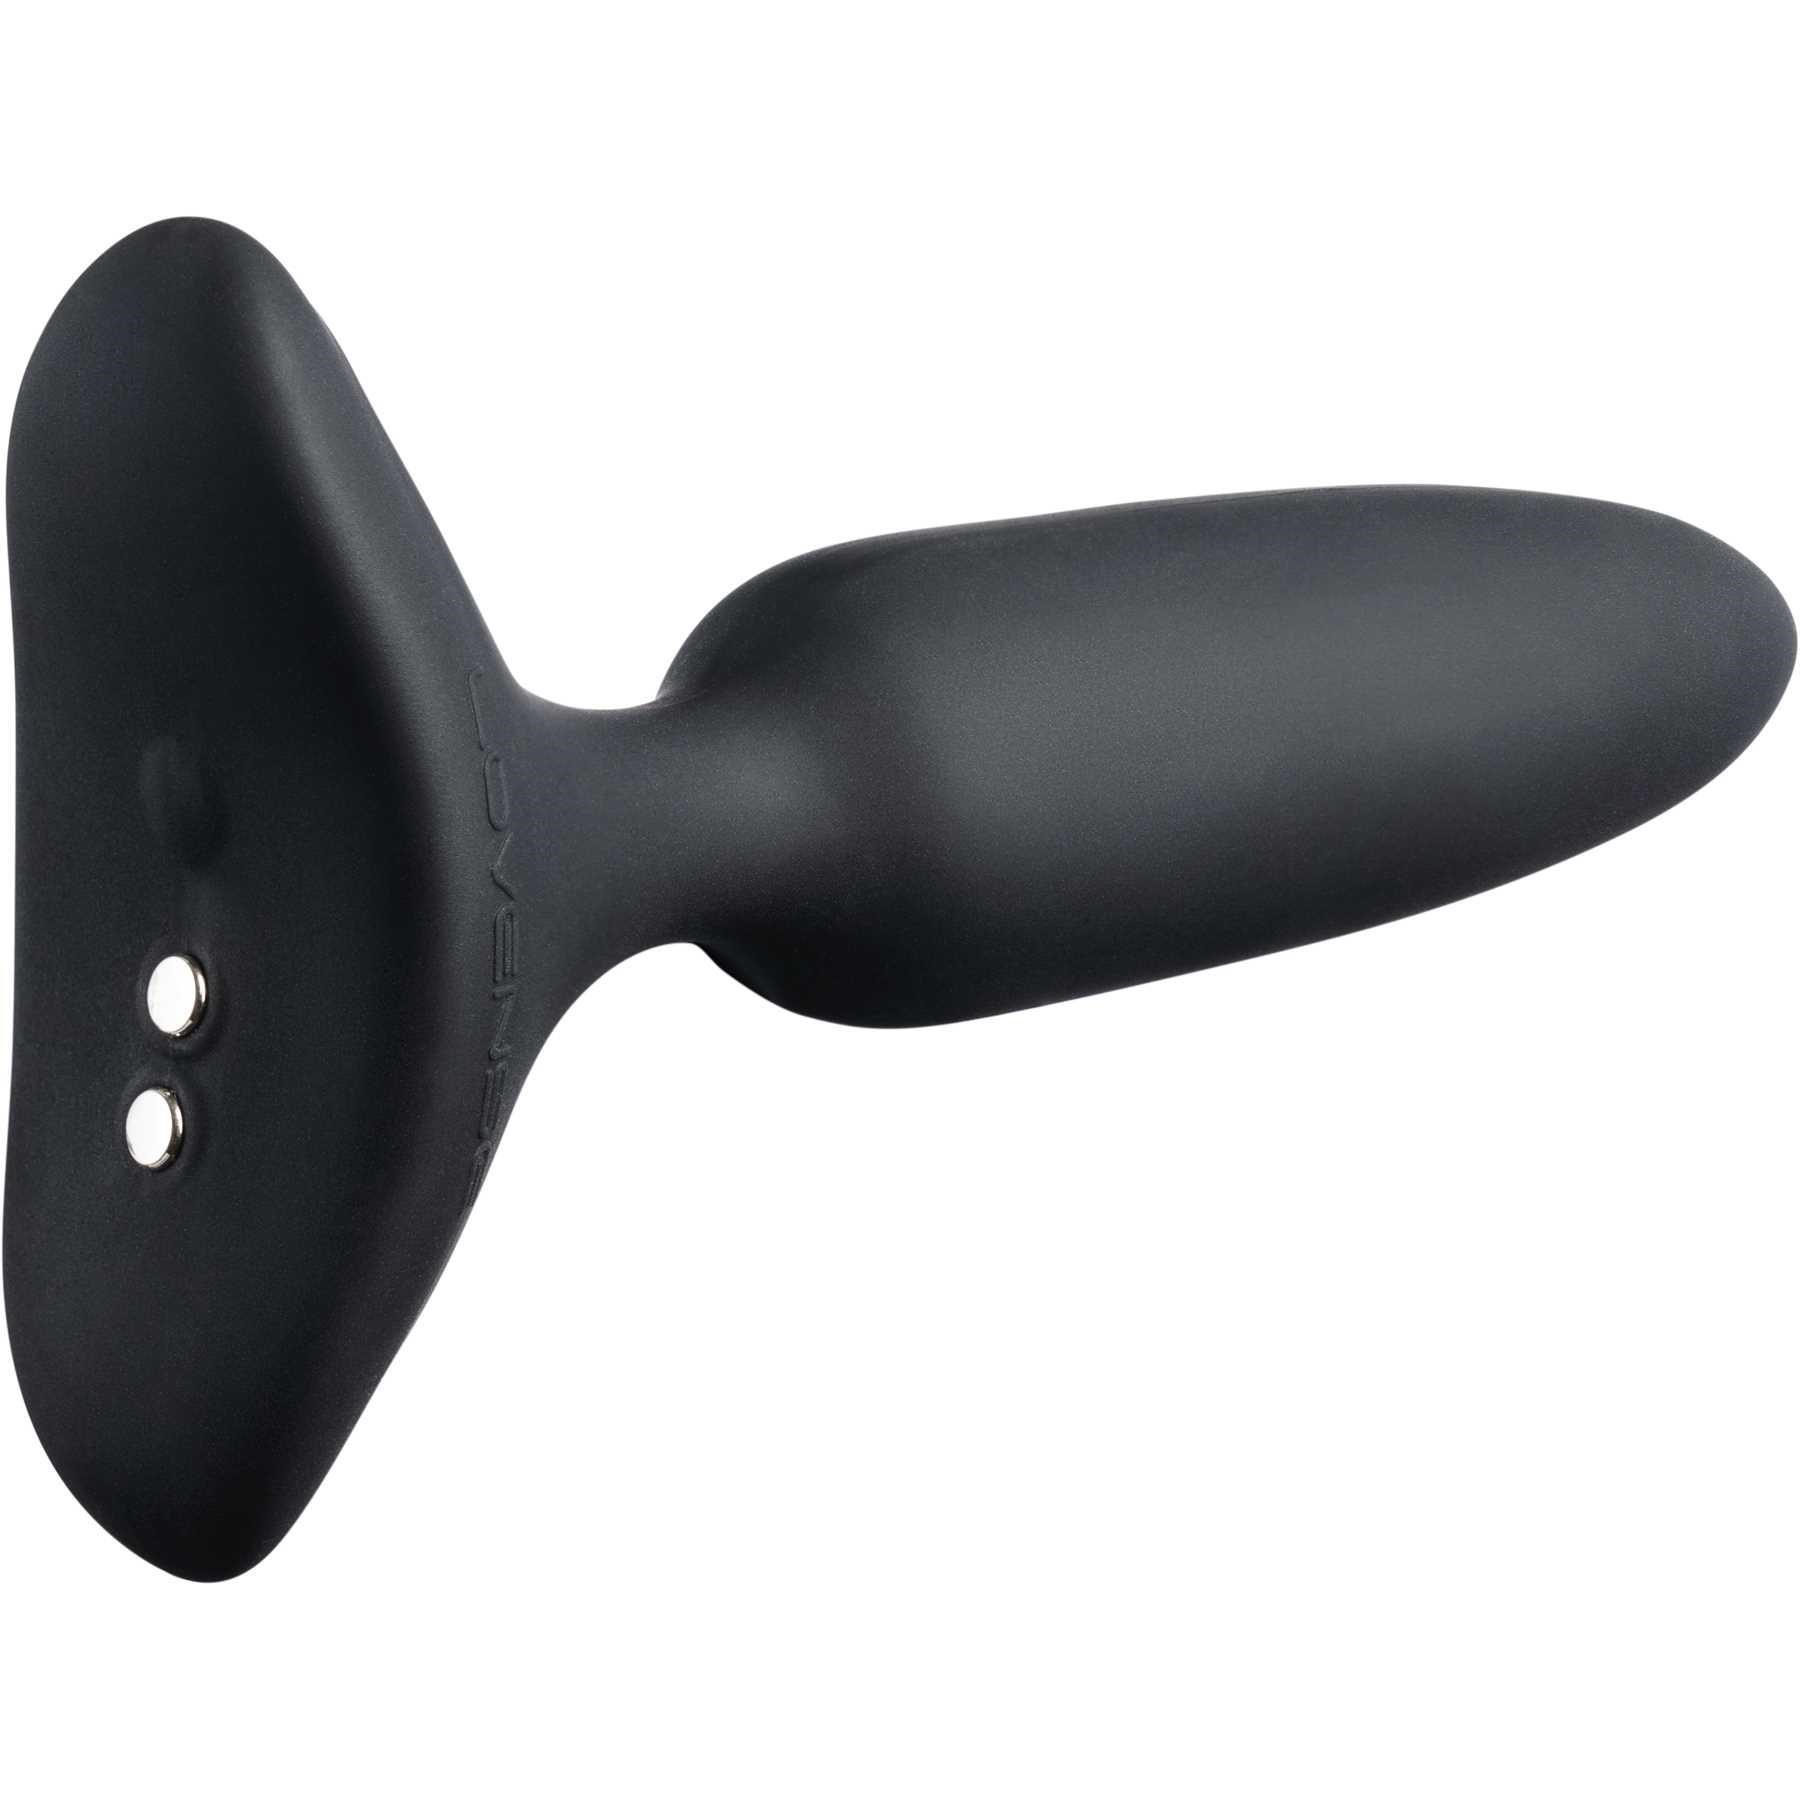 Lovense Hush 2 Bluetooth Vibrating Butt Plug